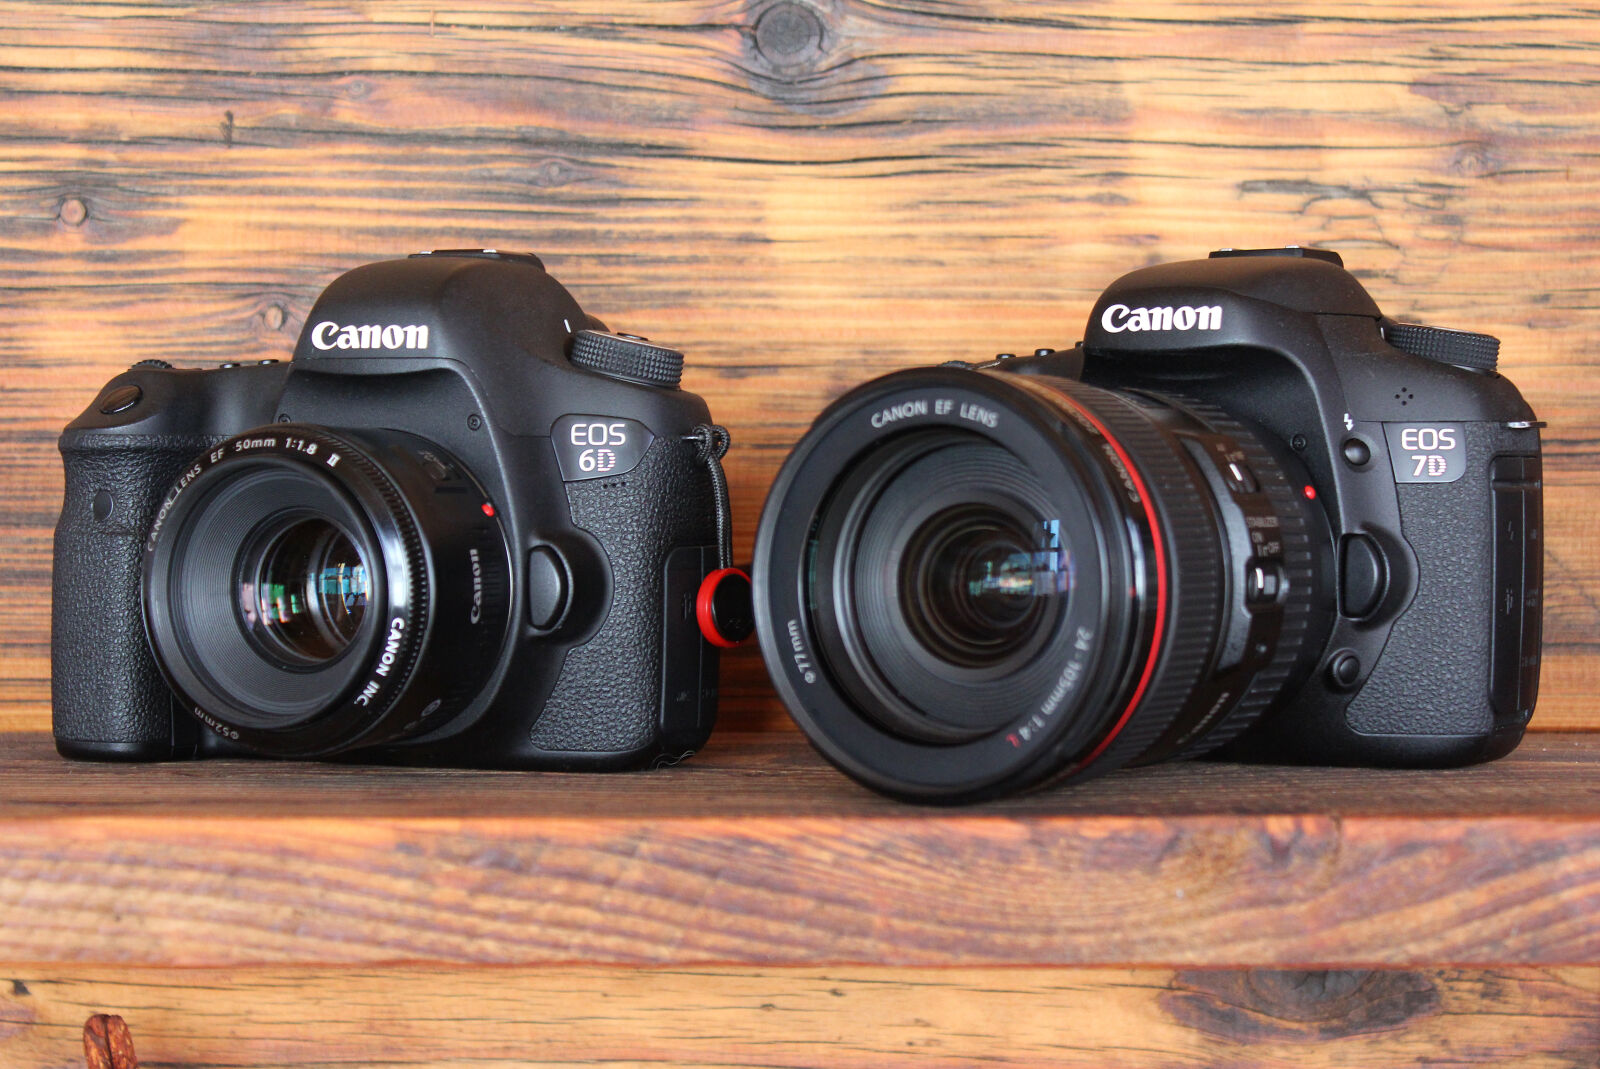 Canon EOS 60D sample photo. Eos 6d, eos 7d photography